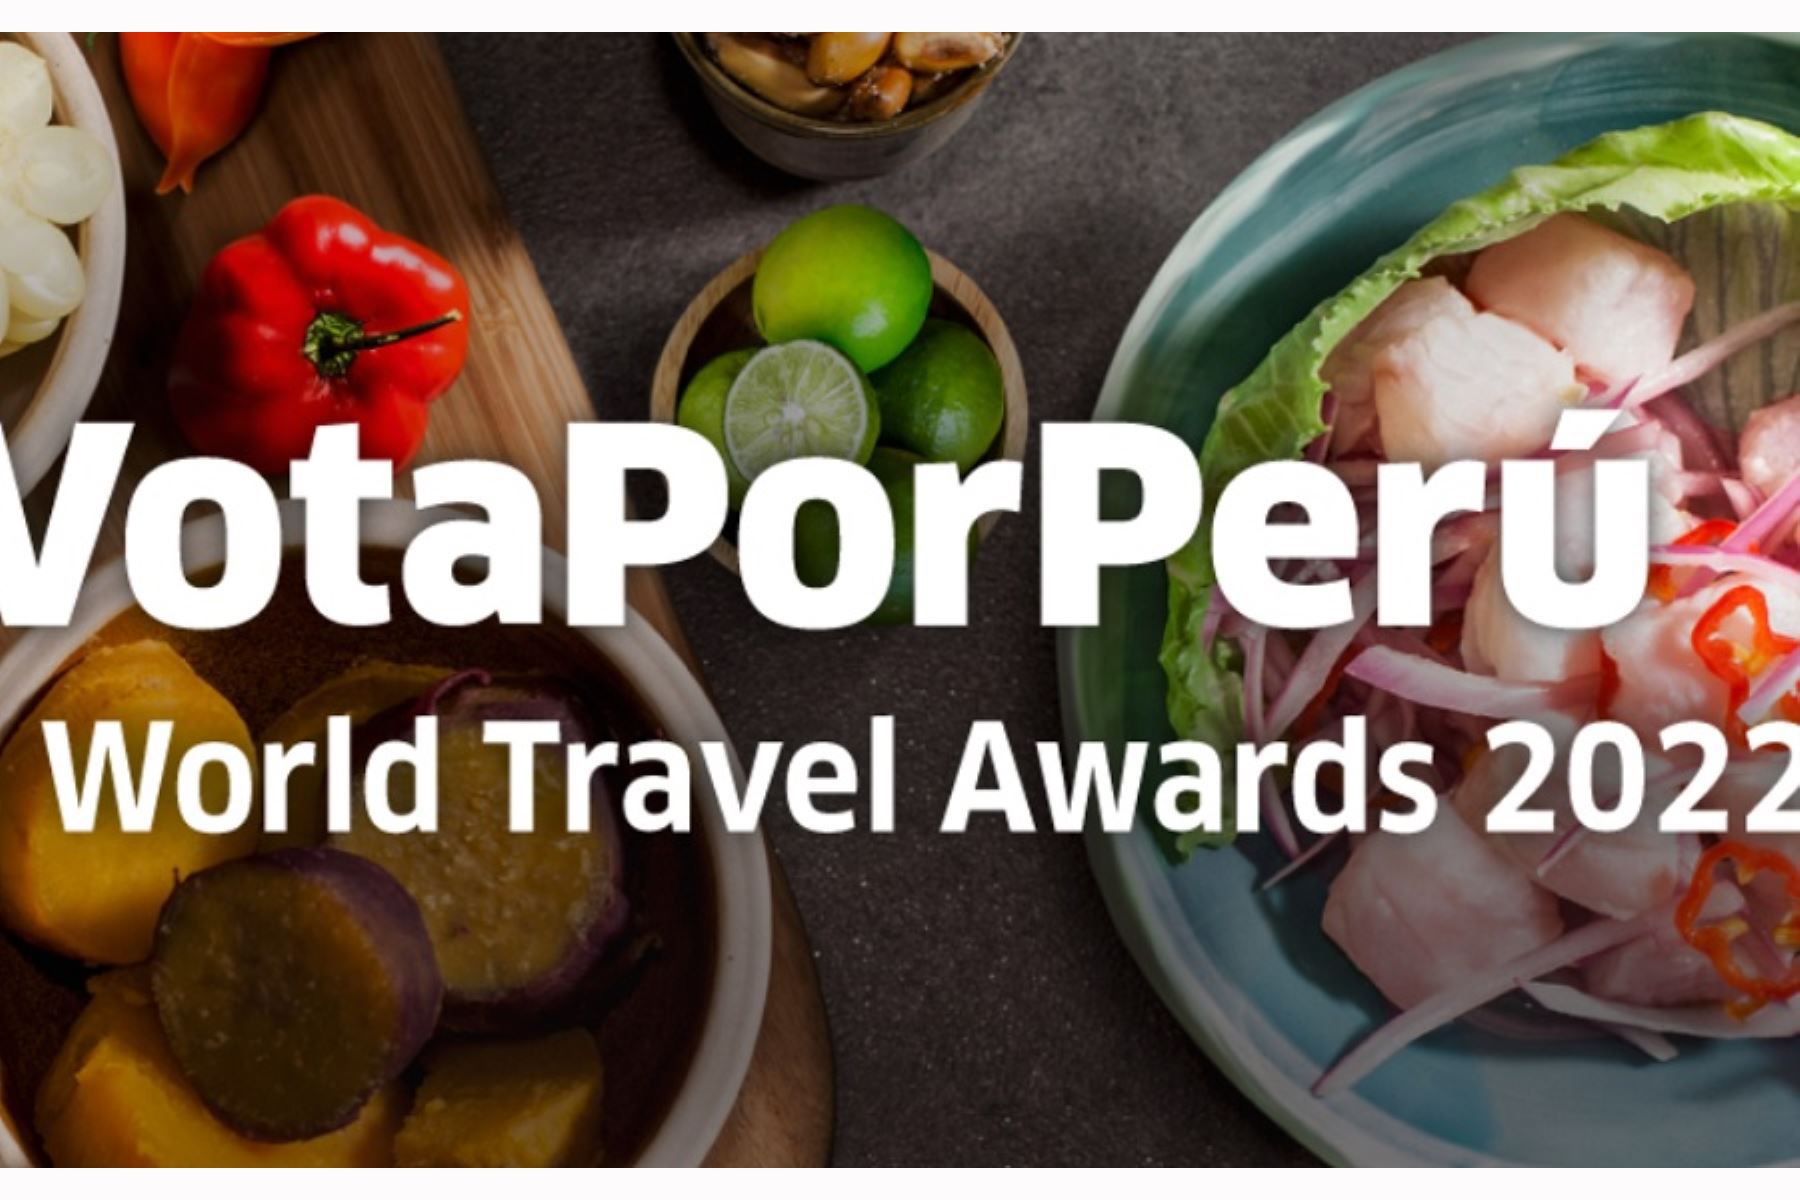 La 29° edición de los World Travel Awards están en marcha y Perú vuelve a ser un importante competidor en Sudamérica con 18 nominaciones, entre los que destaca como Mejor Destino Culinario de Sudamérica, distinción obtenida en las ediciones 2012, 2013, 2014, 2015, 2016, 2018, 2019 y 2021.